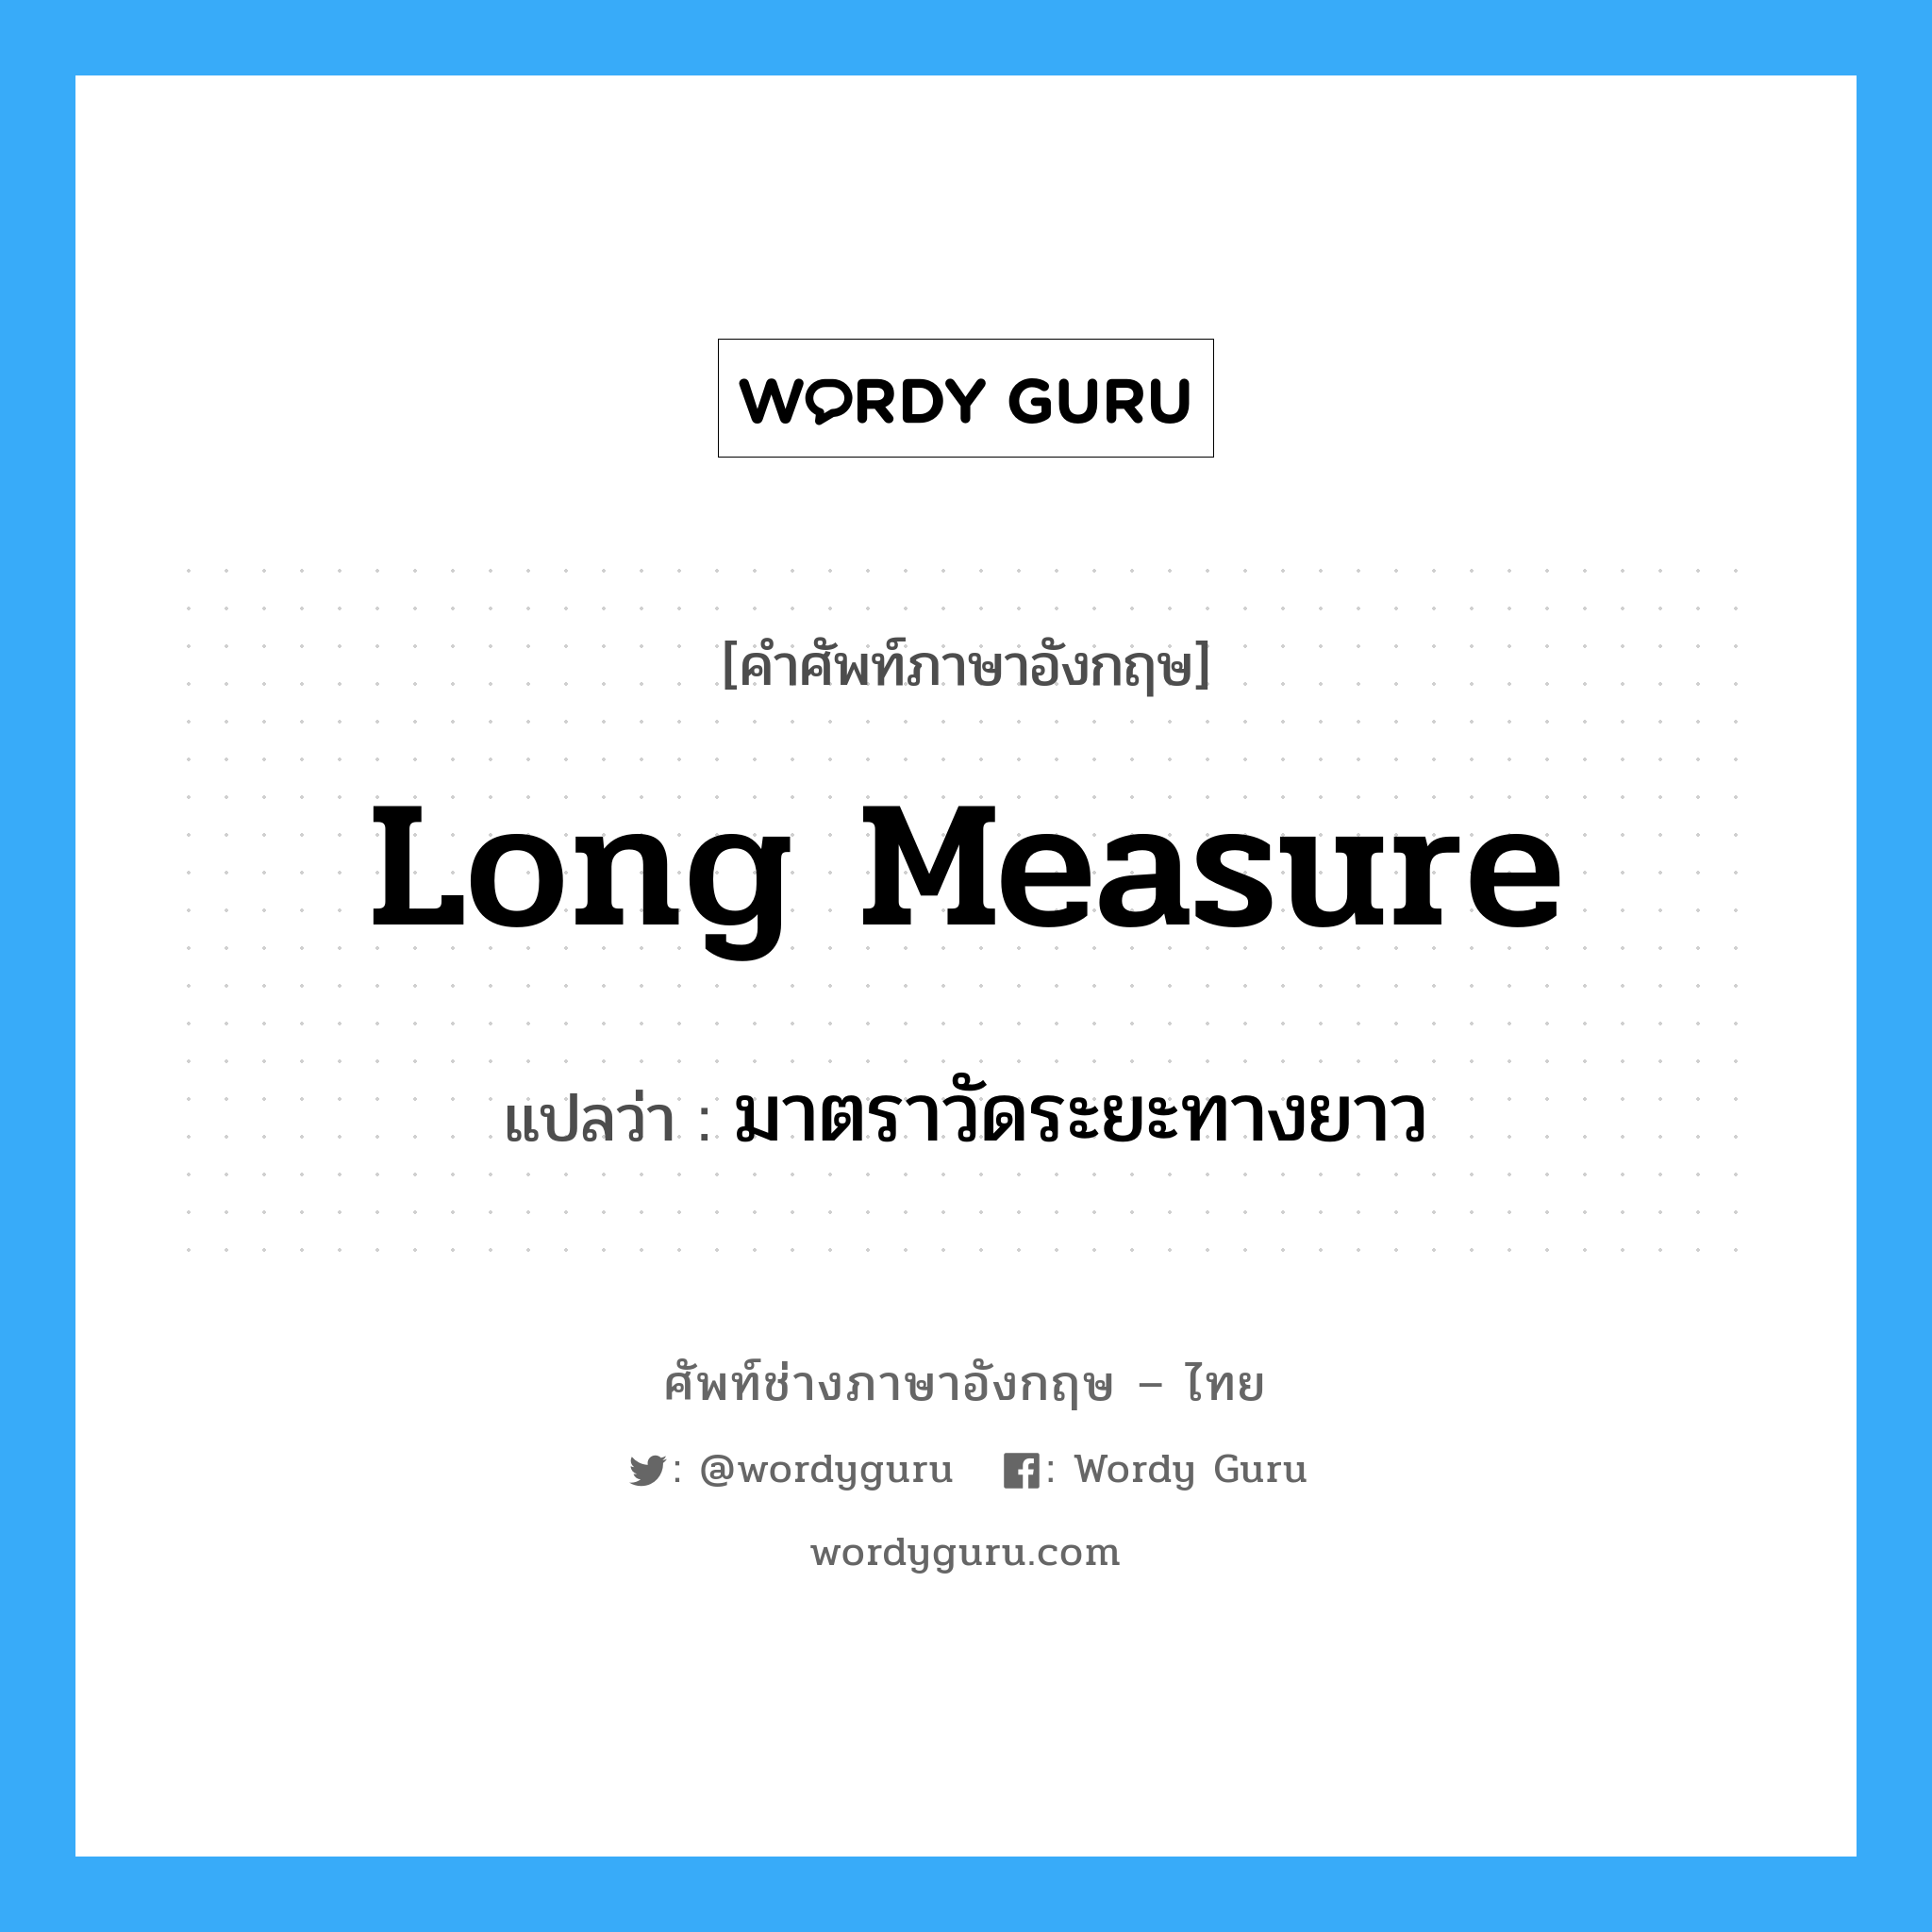 long measure แปลว่า?, คำศัพท์ช่างภาษาอังกฤษ - ไทย long measure คำศัพท์ภาษาอังกฤษ long measure แปลว่า มาตราวัดระยะทางยาว